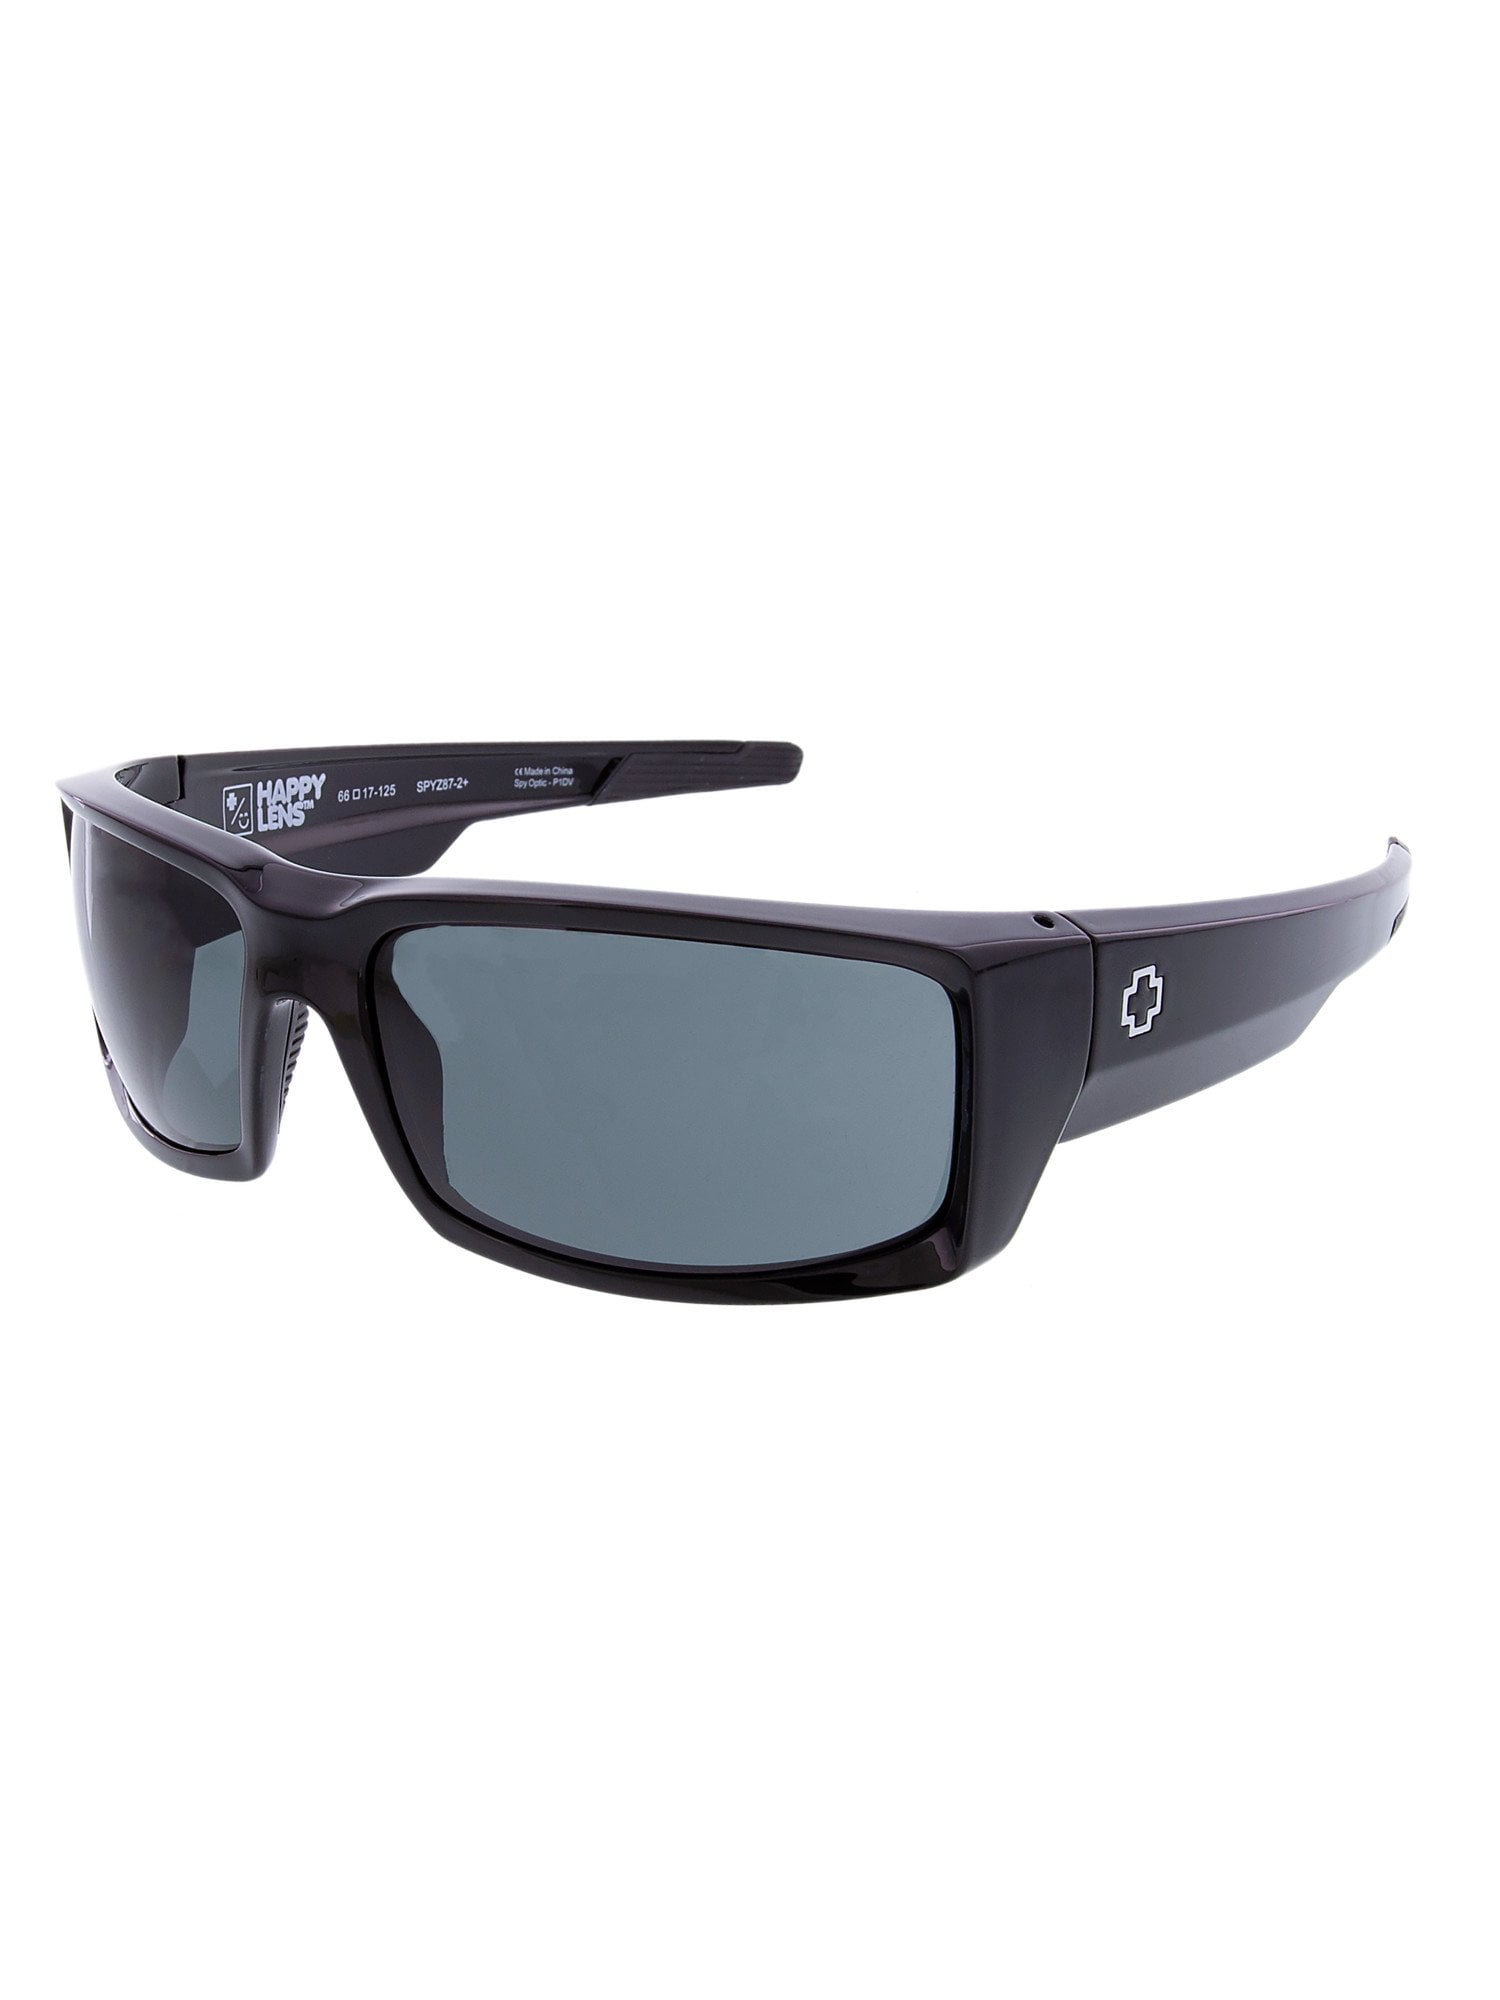 Spy Sunglasses 673118242863 General Lens Scratch Resistant Lenses Wrap ...